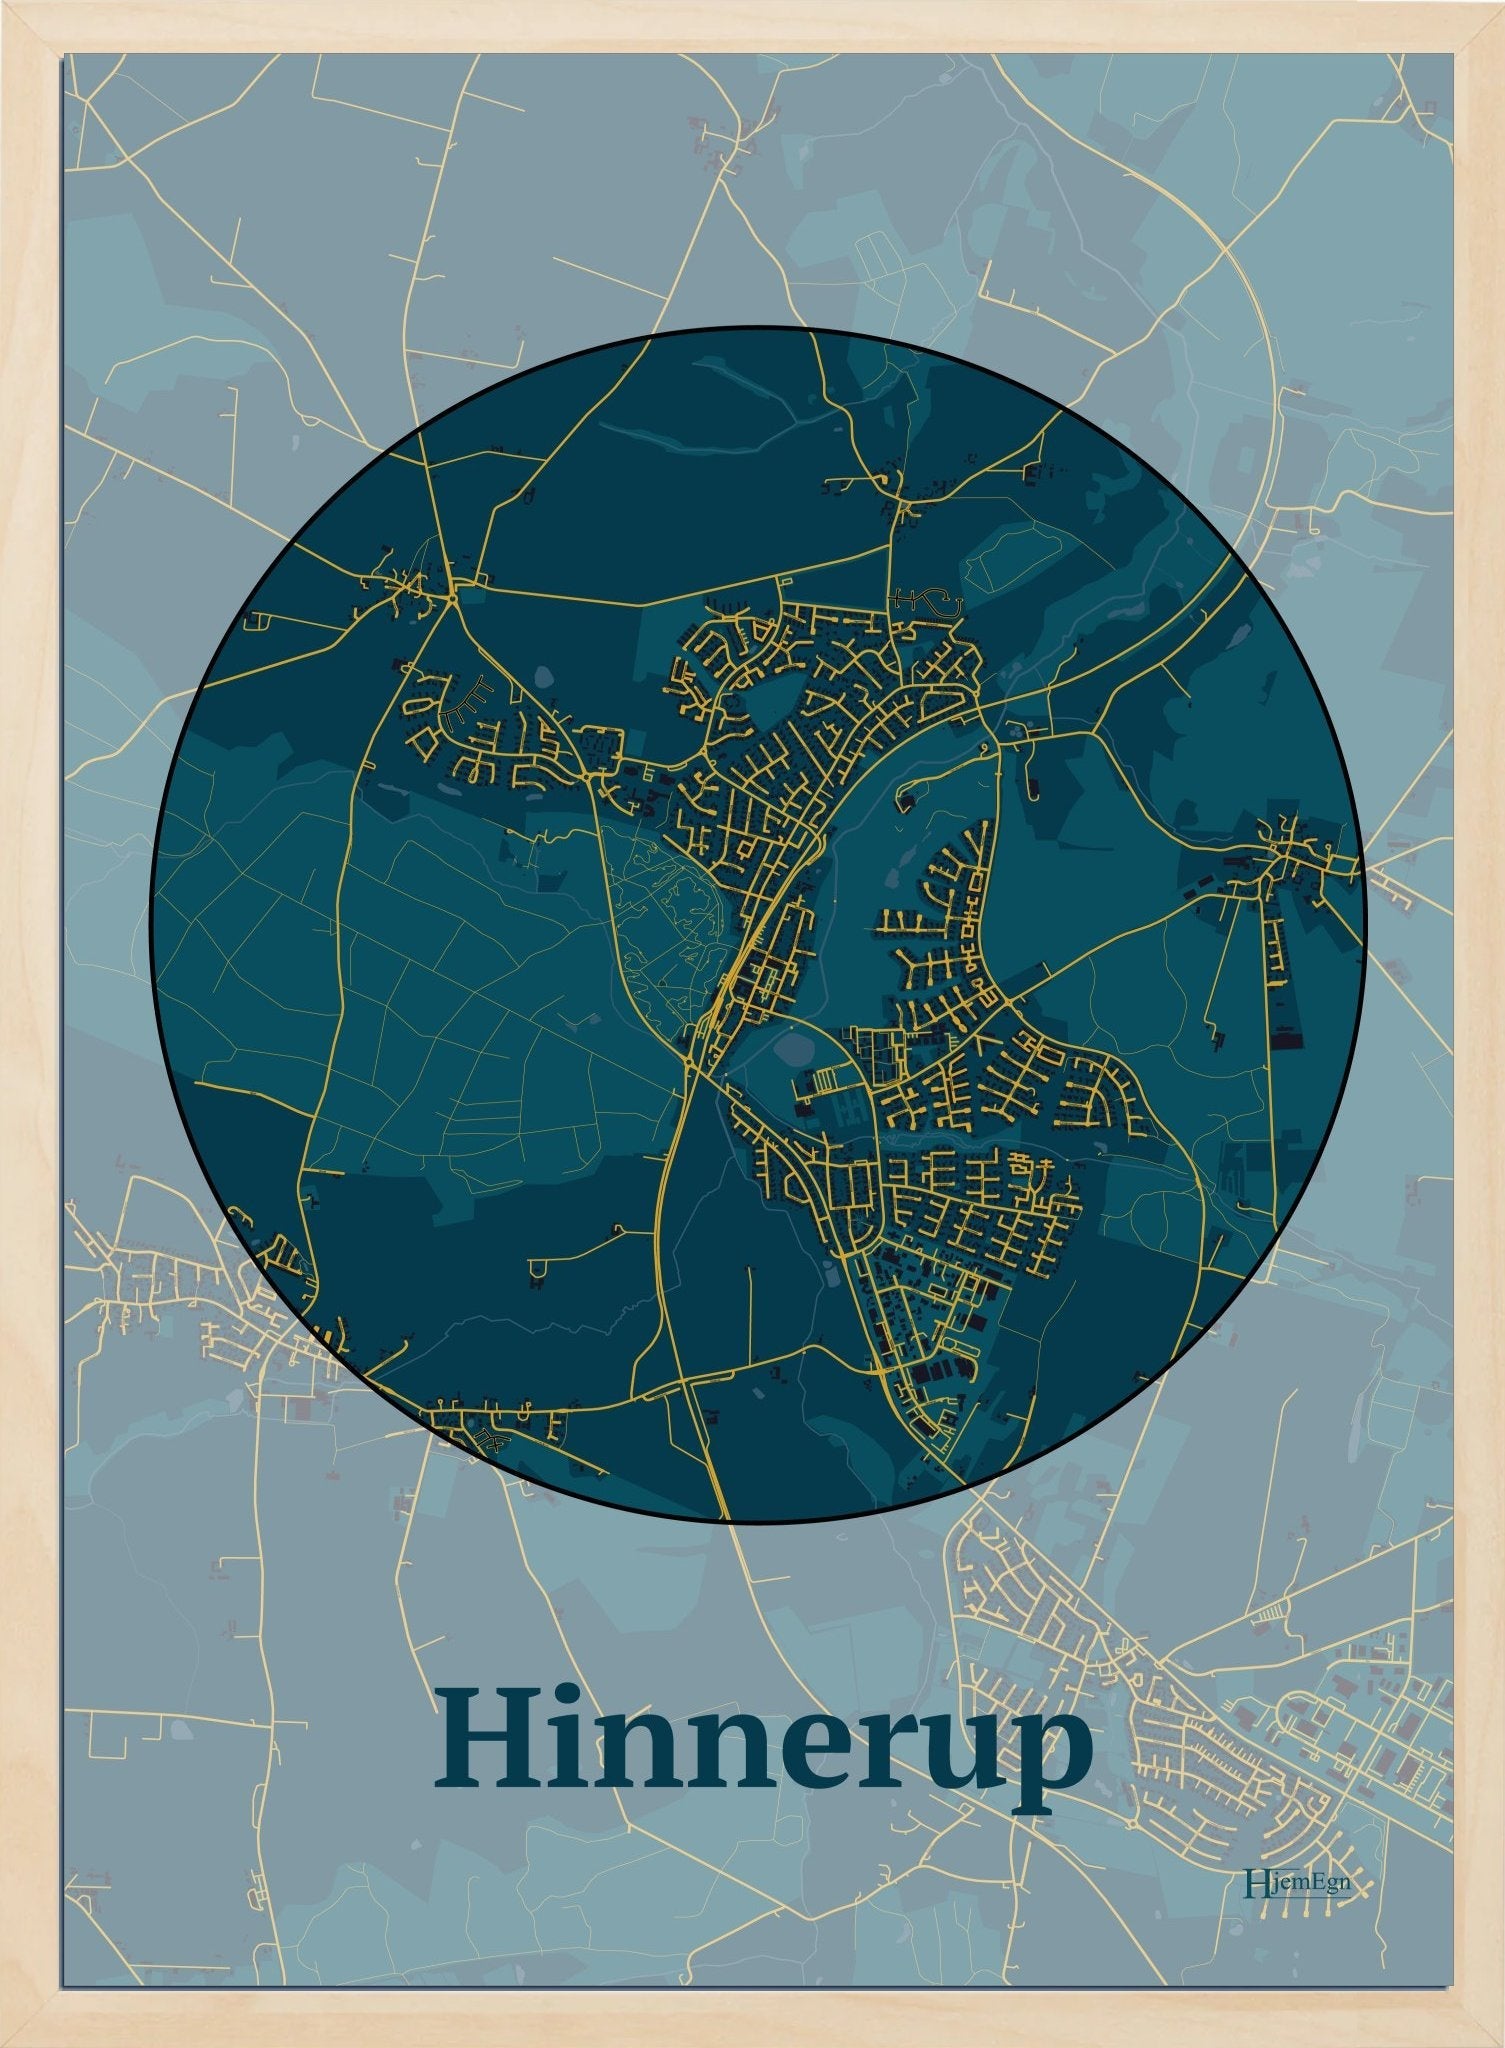 Hinnerup plakat i farve mørk blå og HjemEgn.dk design centrum. Design bykort for Hinnerup